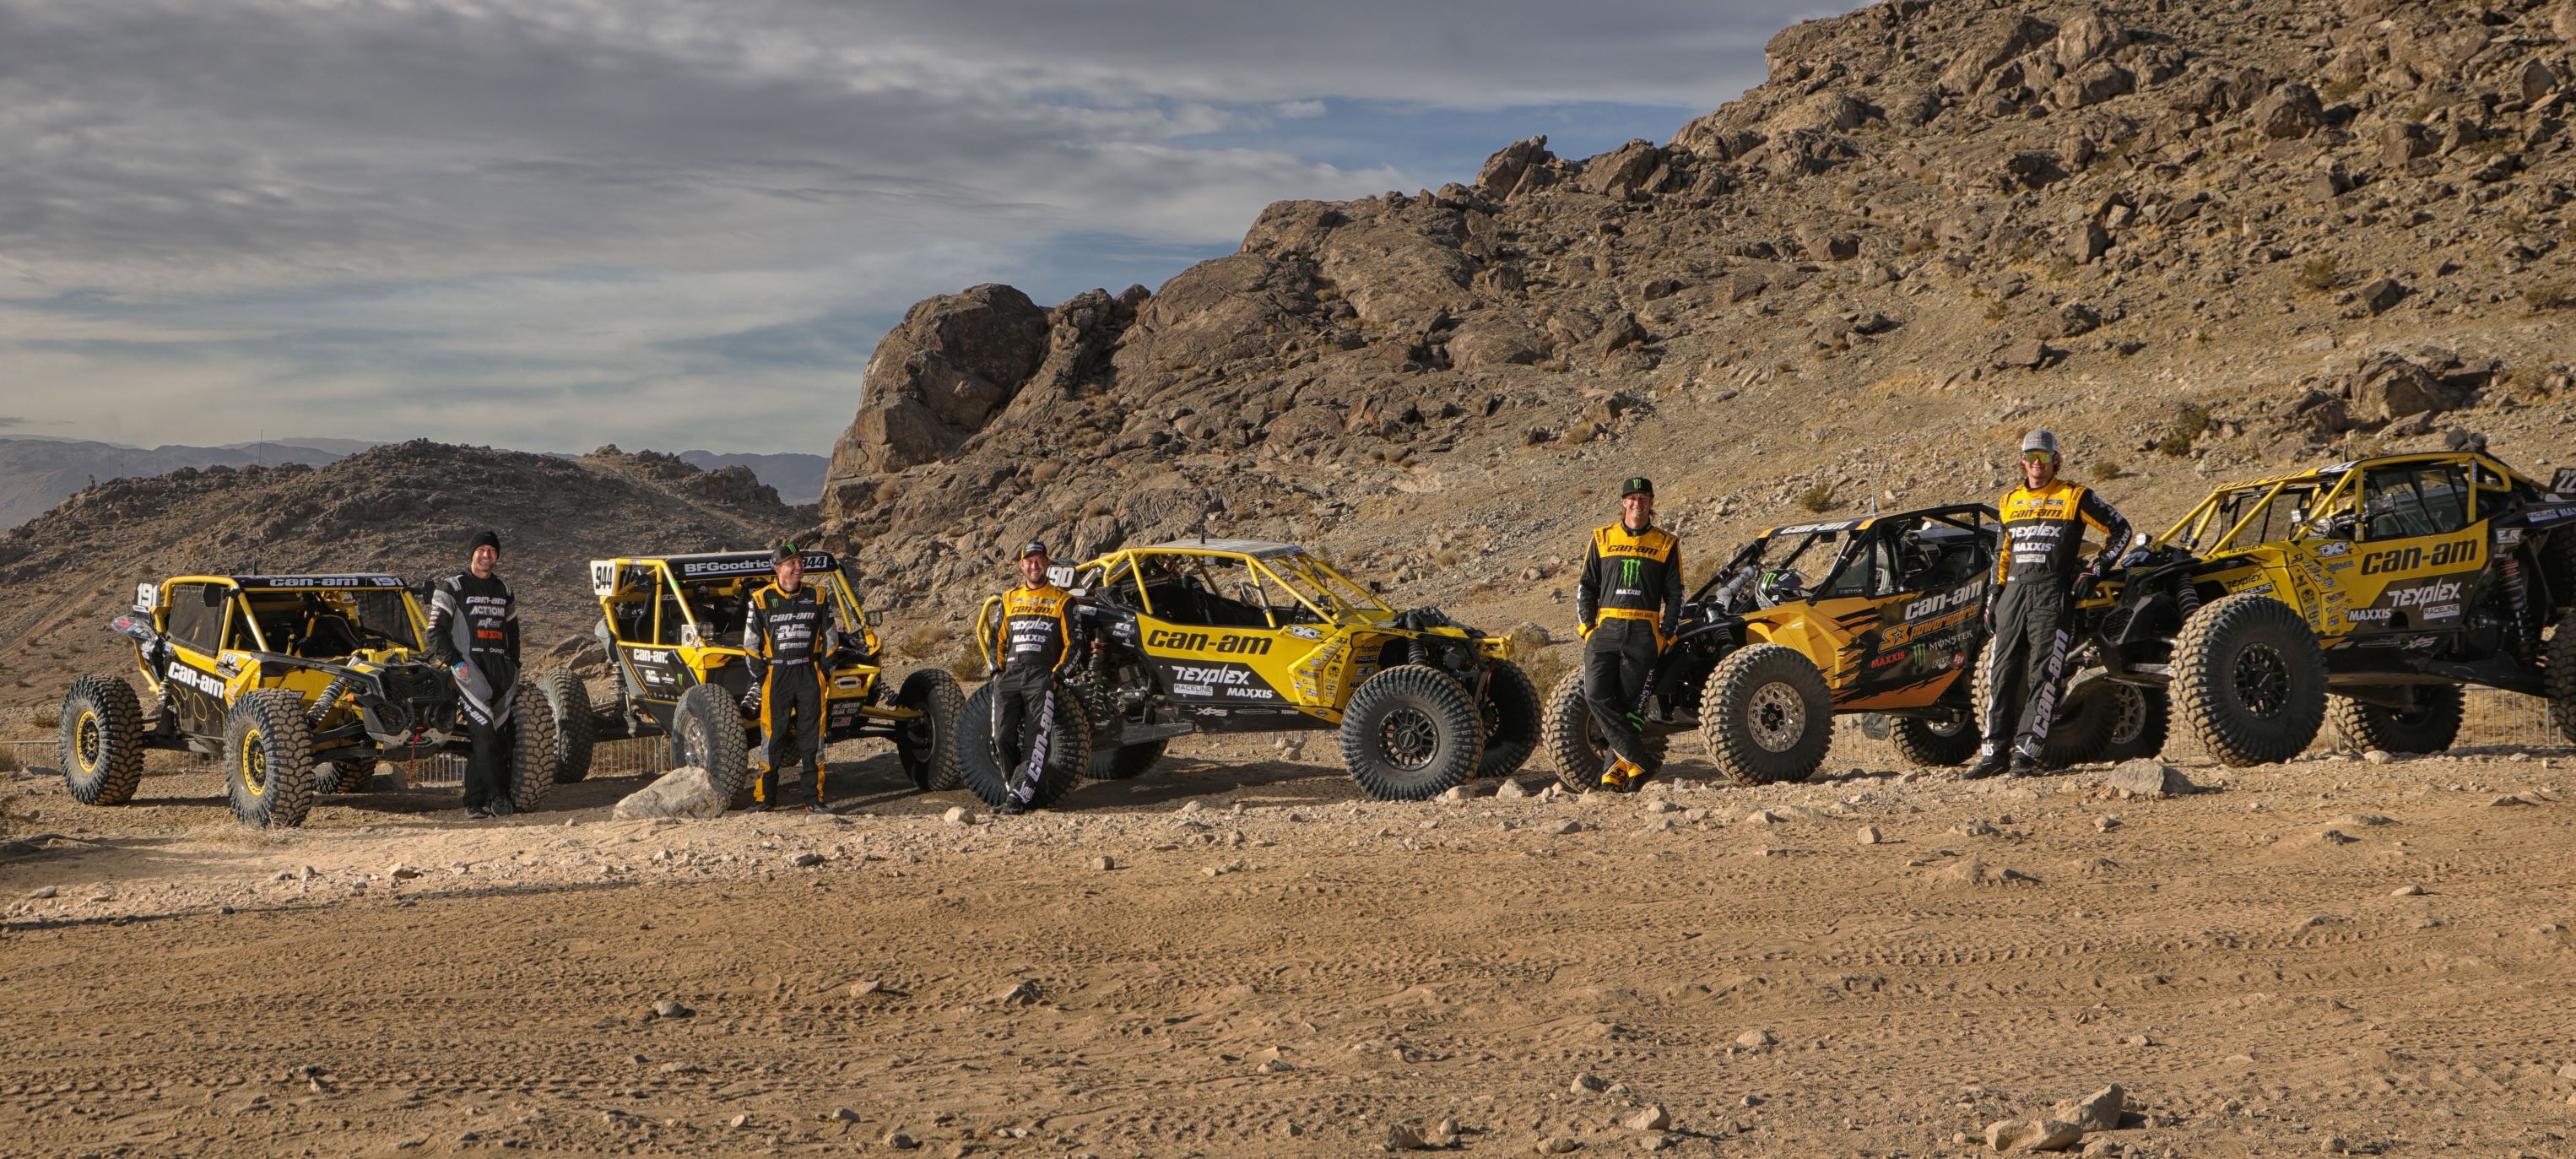 Los pilotos del equipo Can-Am amarillo frente a sus vehículos estacionados durante la carrera KOH